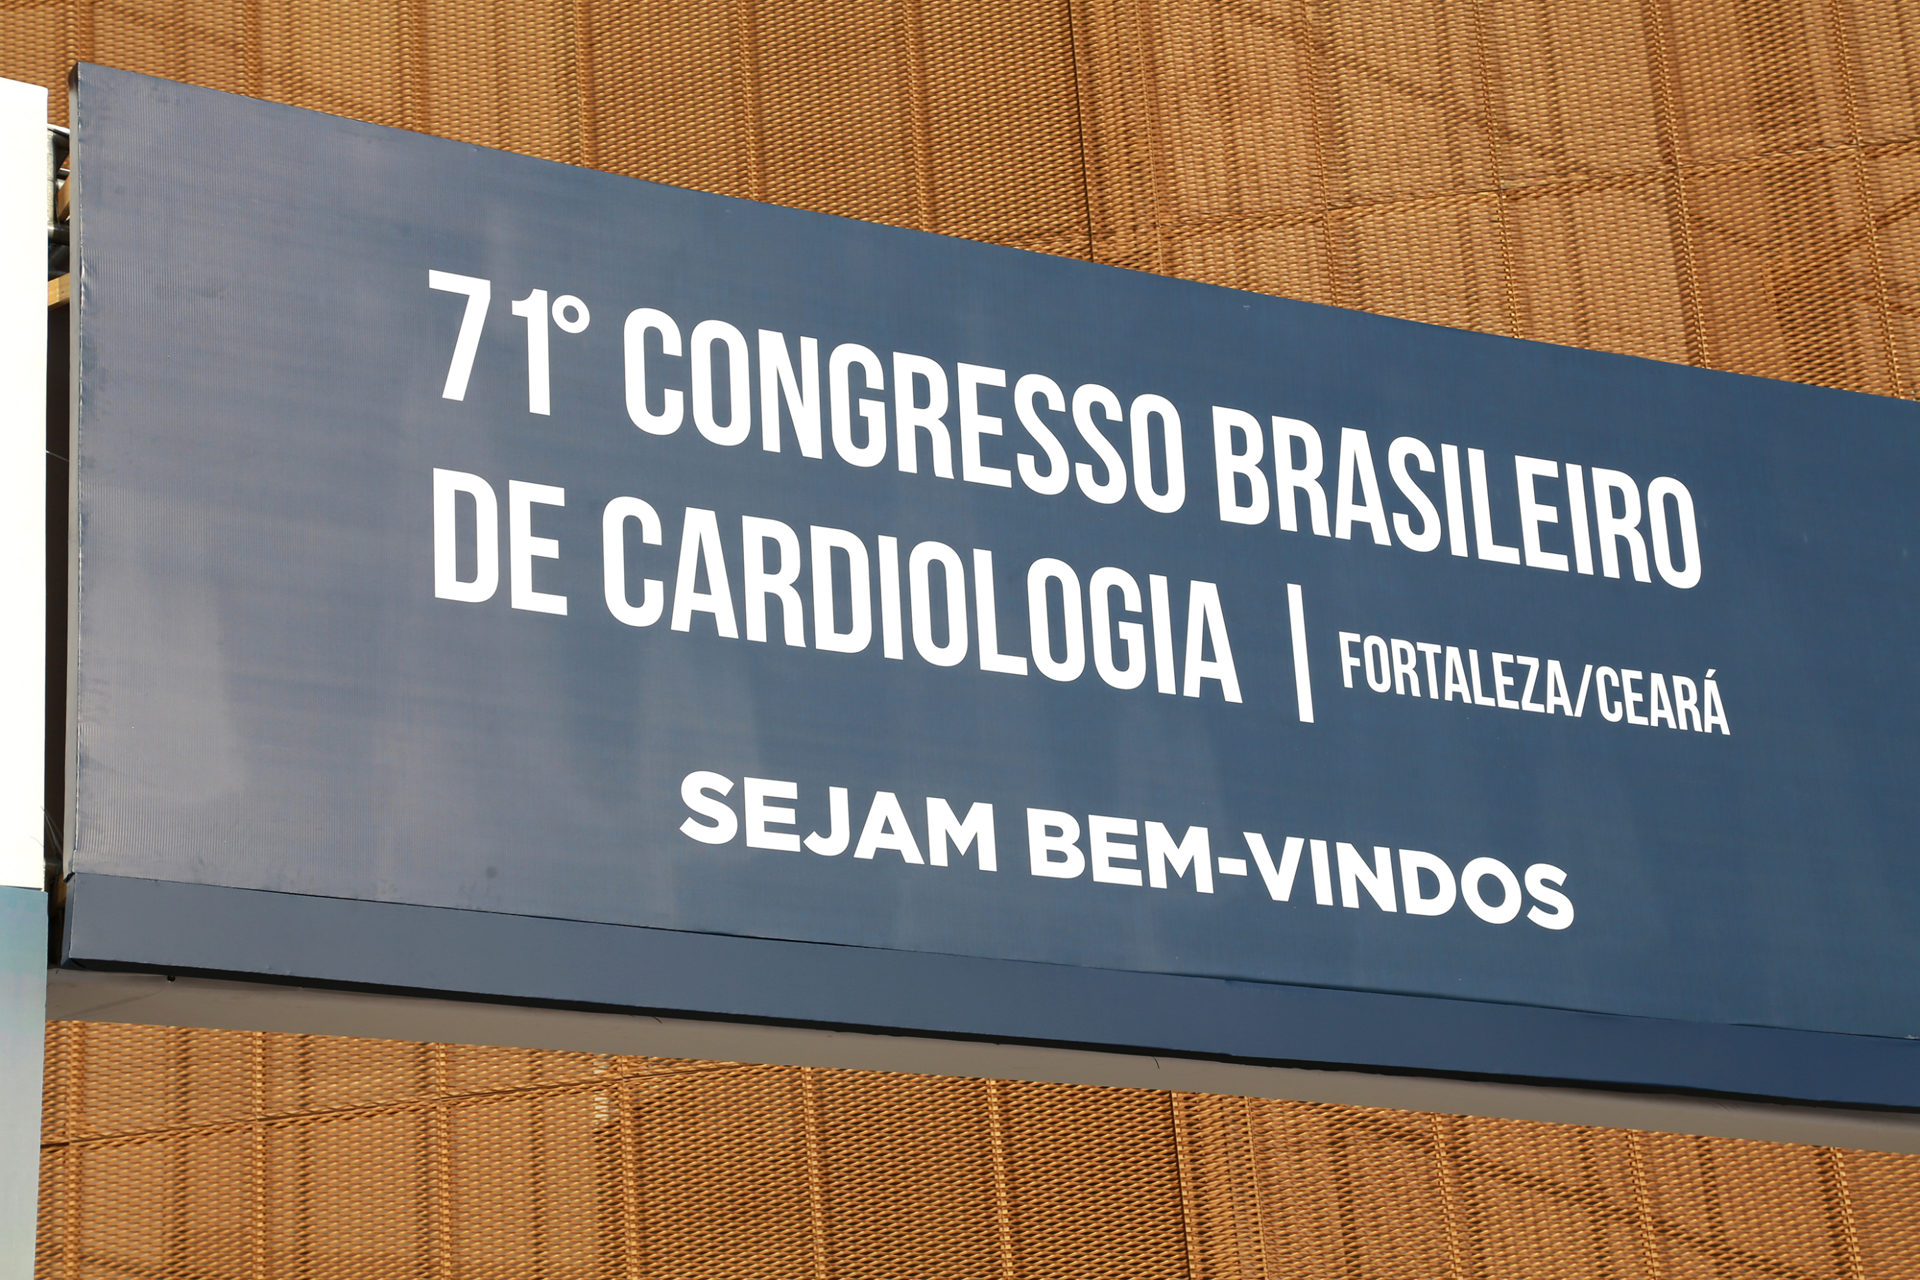 71° Congresso de cardiologia